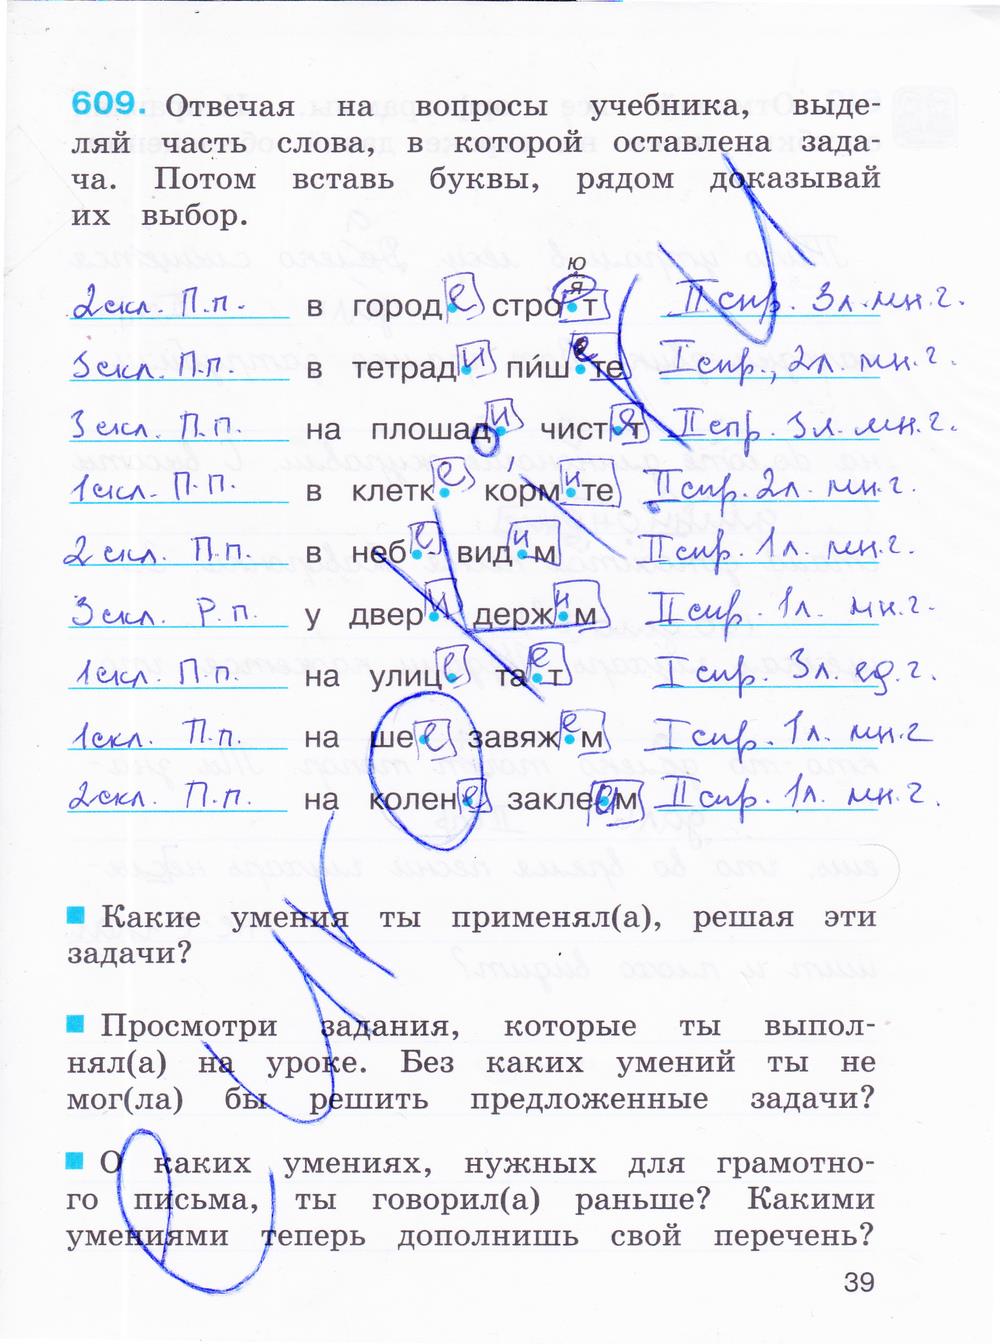 гдз 4 класс рабочая тетрадь часть 3 страница 39 русский язык Соловейчик, Кузьменко